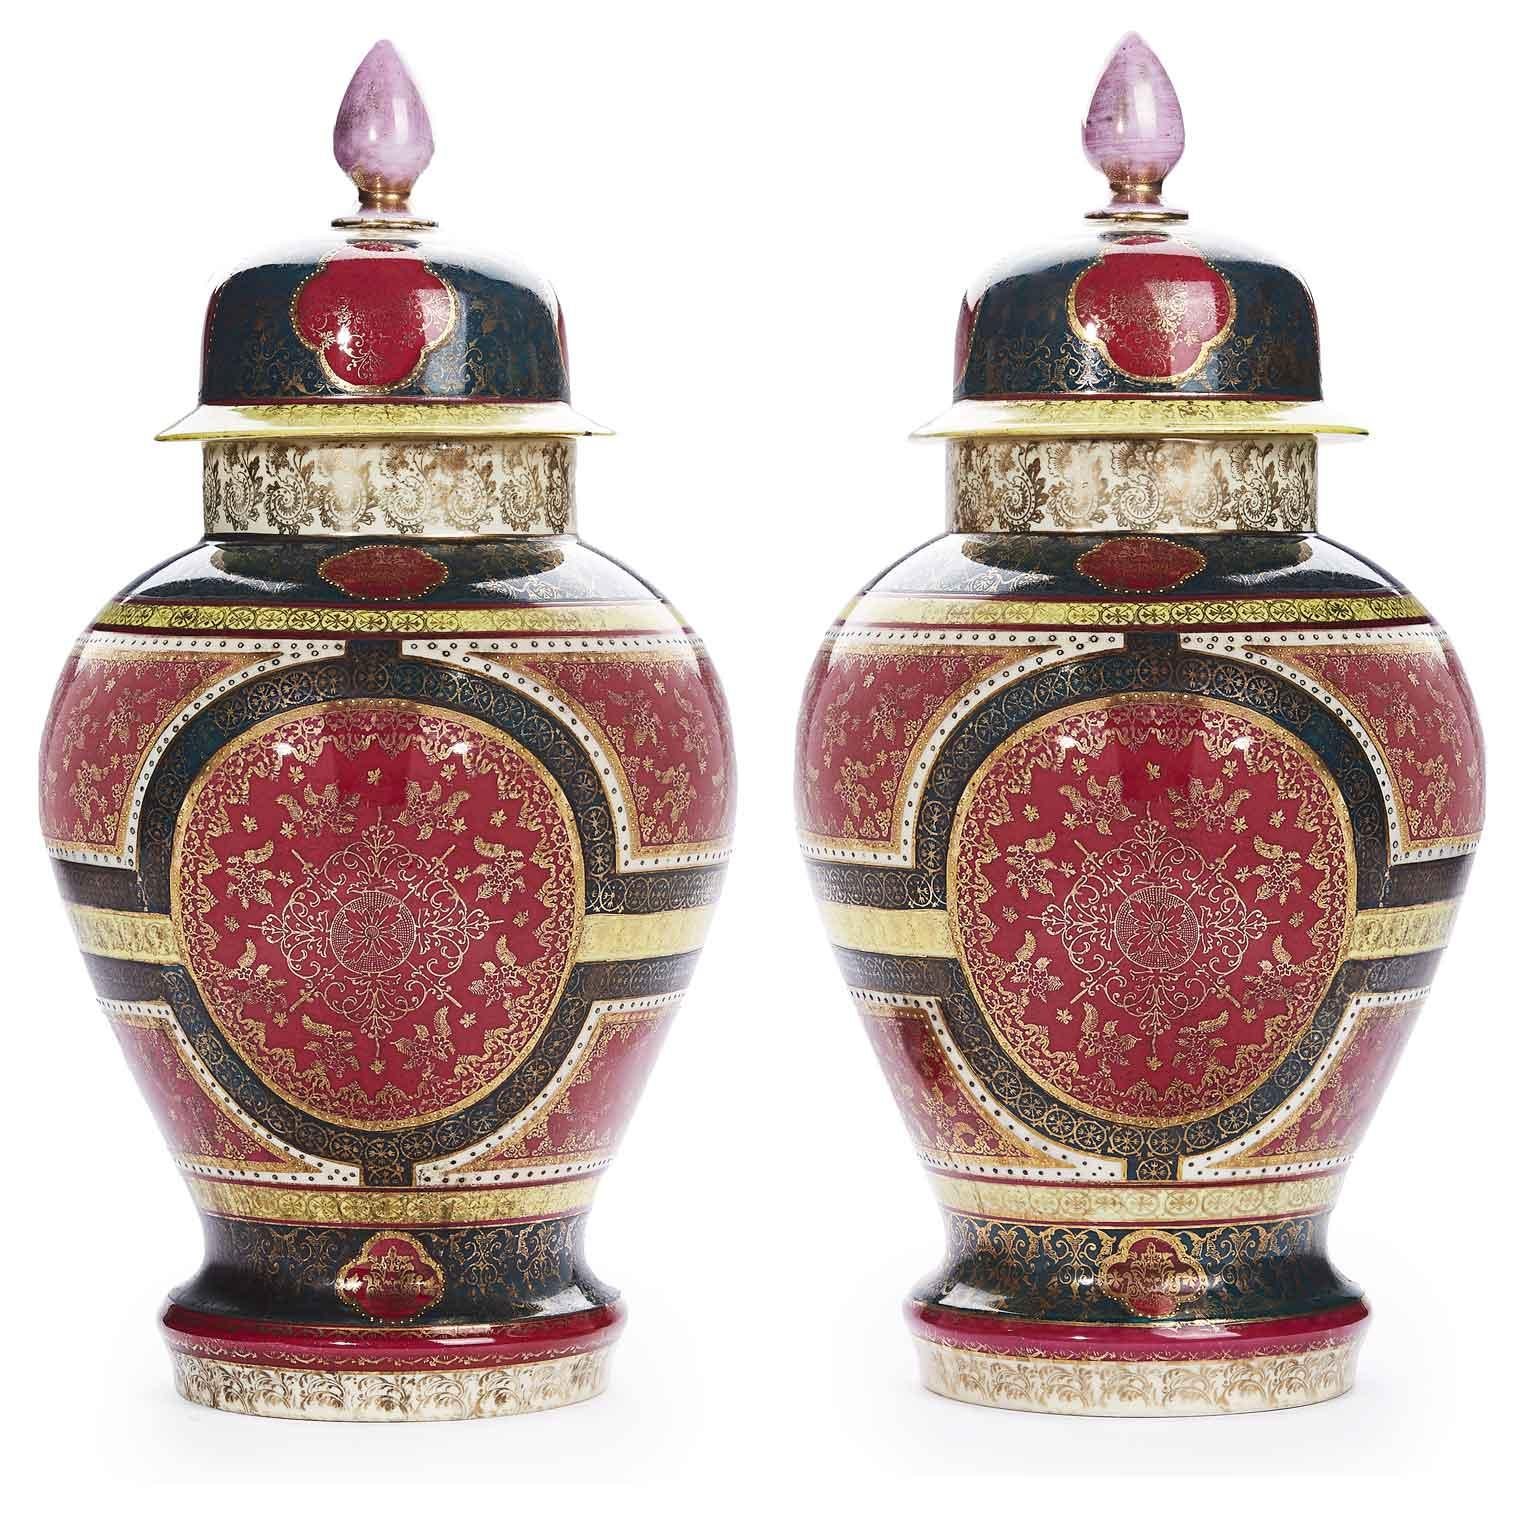 Paar königliche Wiener Porzellanvasen aus dem 19. Jahrhundert, antikes österreichisches Paar Potiche-Vasen, dekoriert in roten, grünen und gelben Farben, mit abnehmbarem Deckel. Der tiefrote Grund ist durchgehend reich mit vergoldeten Details